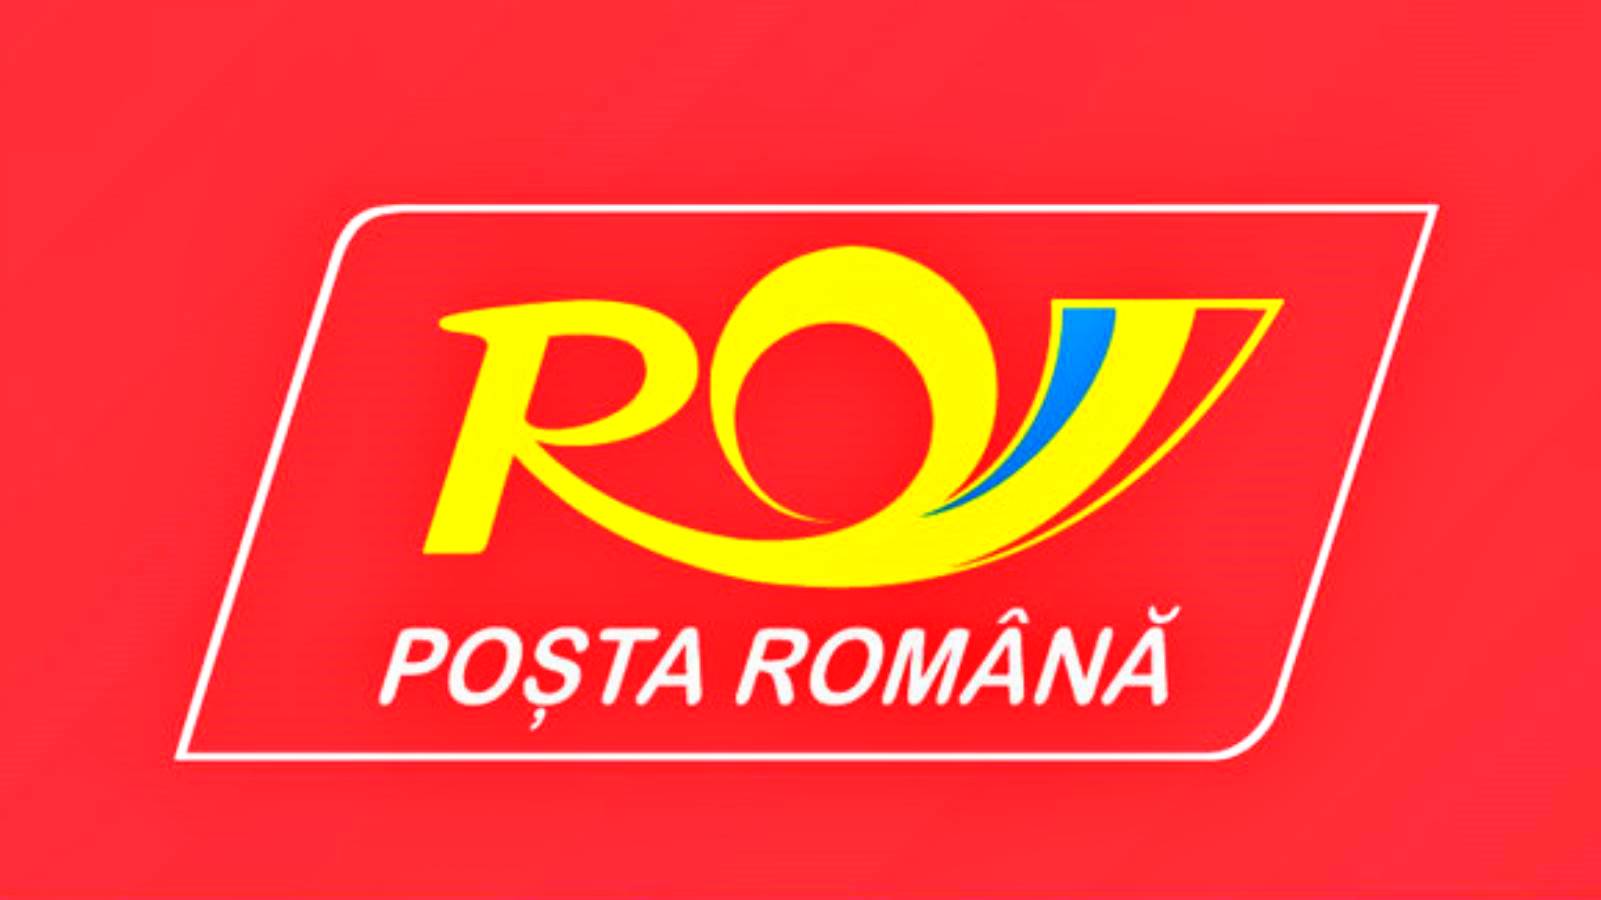 Il Post rumeno avverte tutti i rumeni adesso